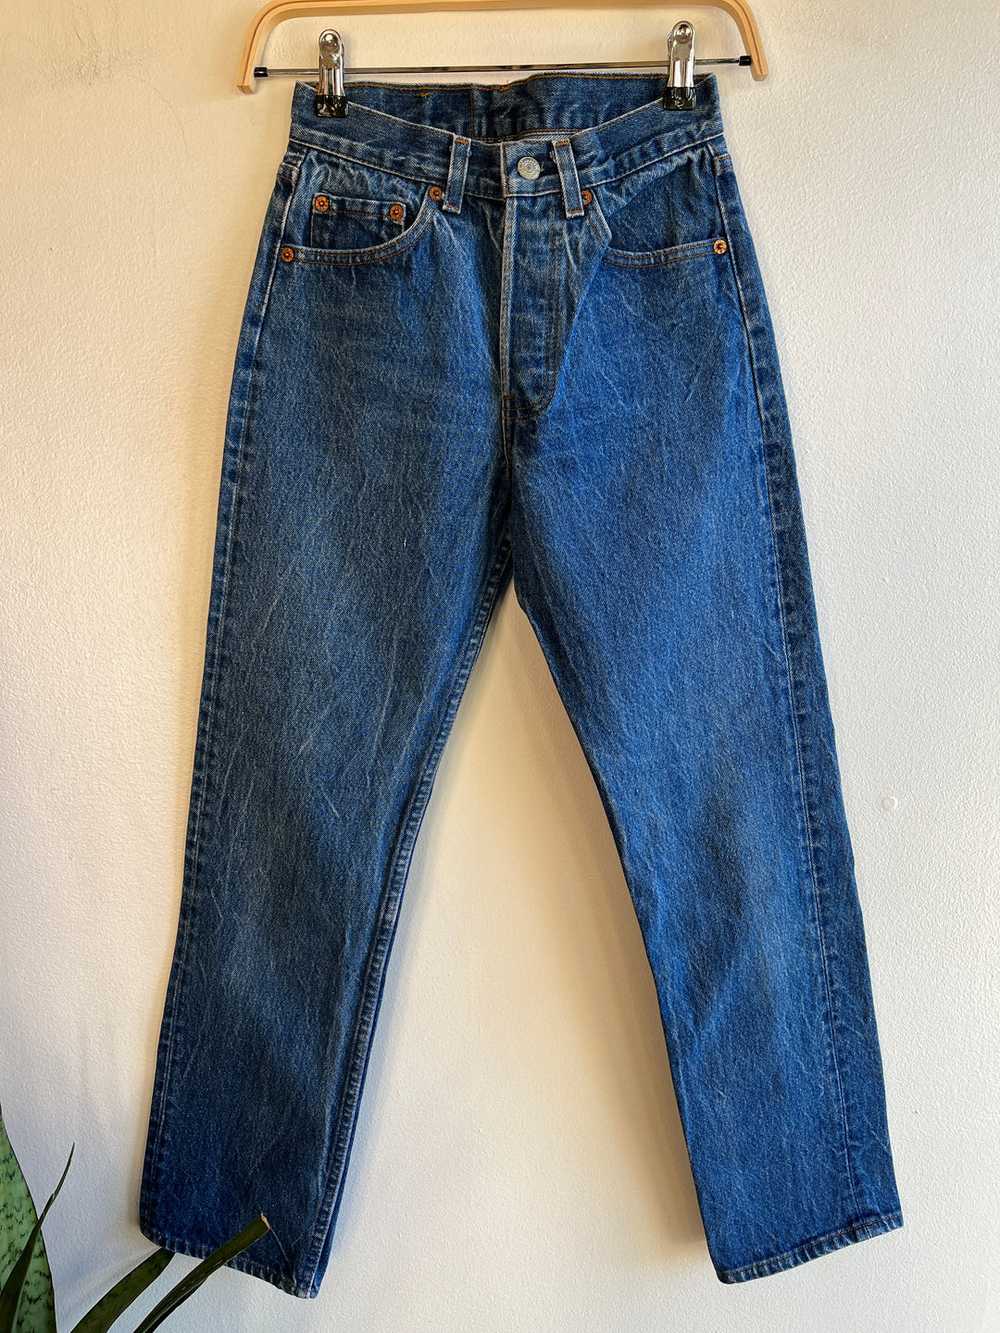 Vintage 1980’s Levi’s 501 Denim Jeans - image 1